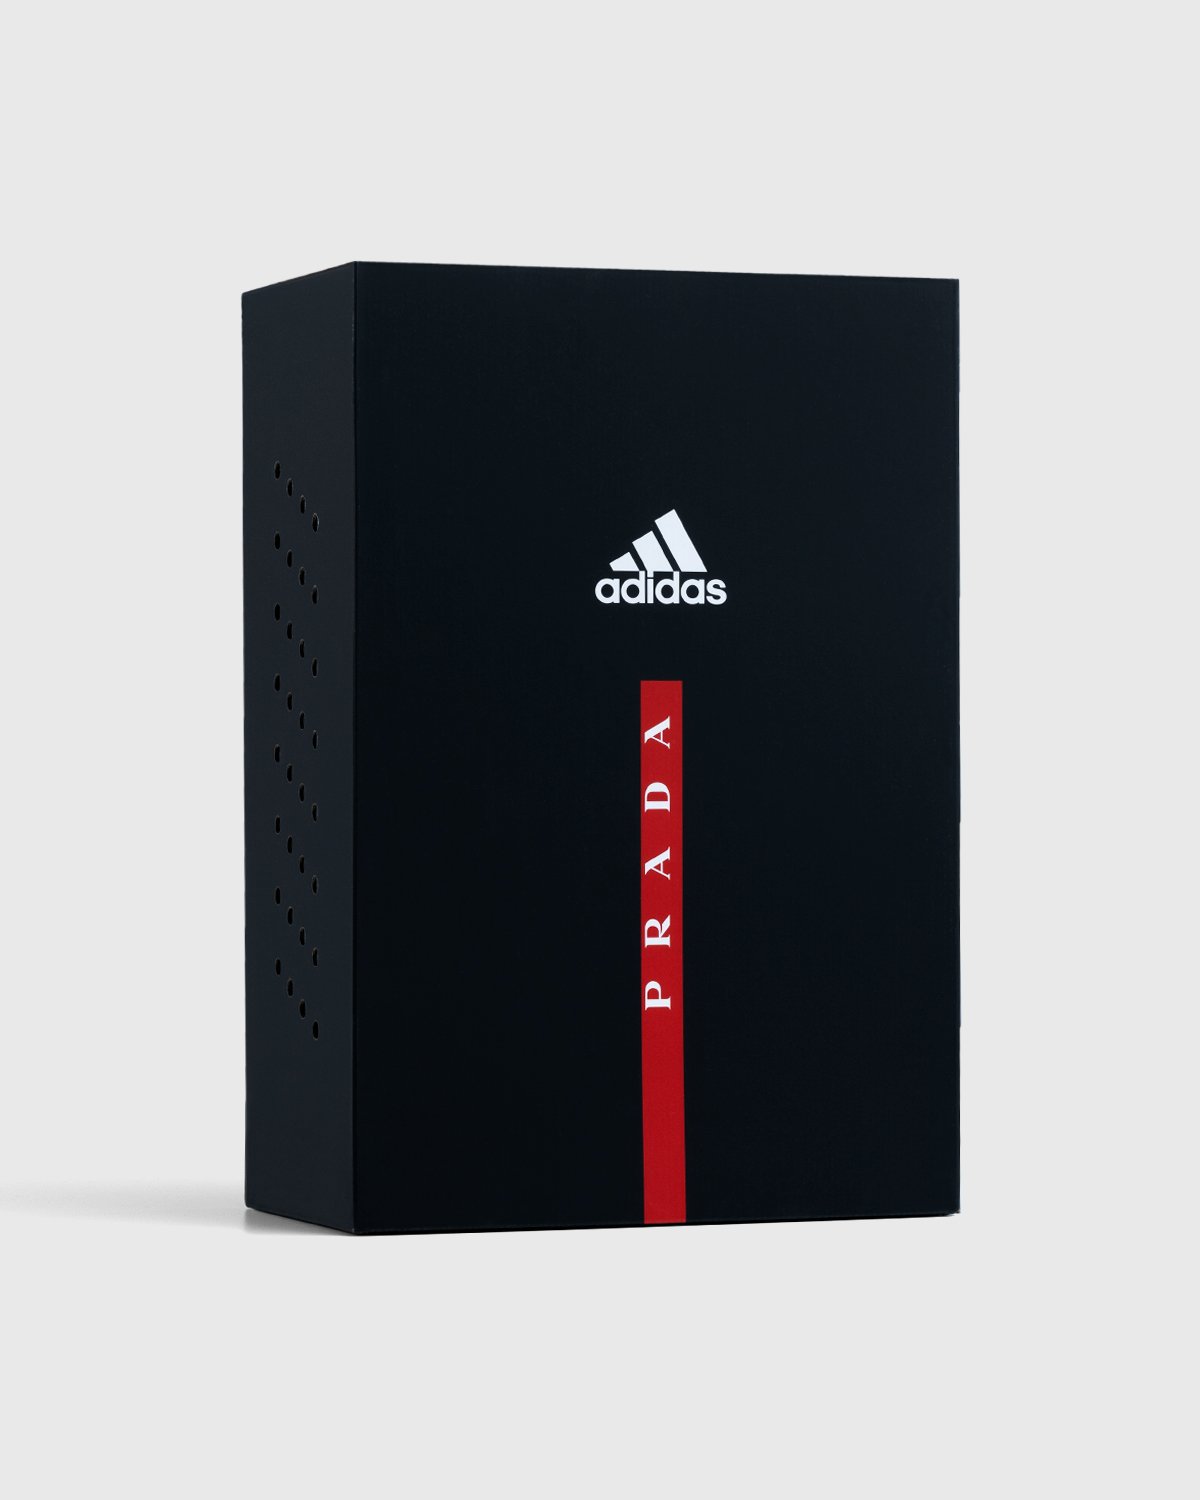 Adidas x Prada - A+P Luna Rossa 21 Performance - Footwear - Grey - Image 12